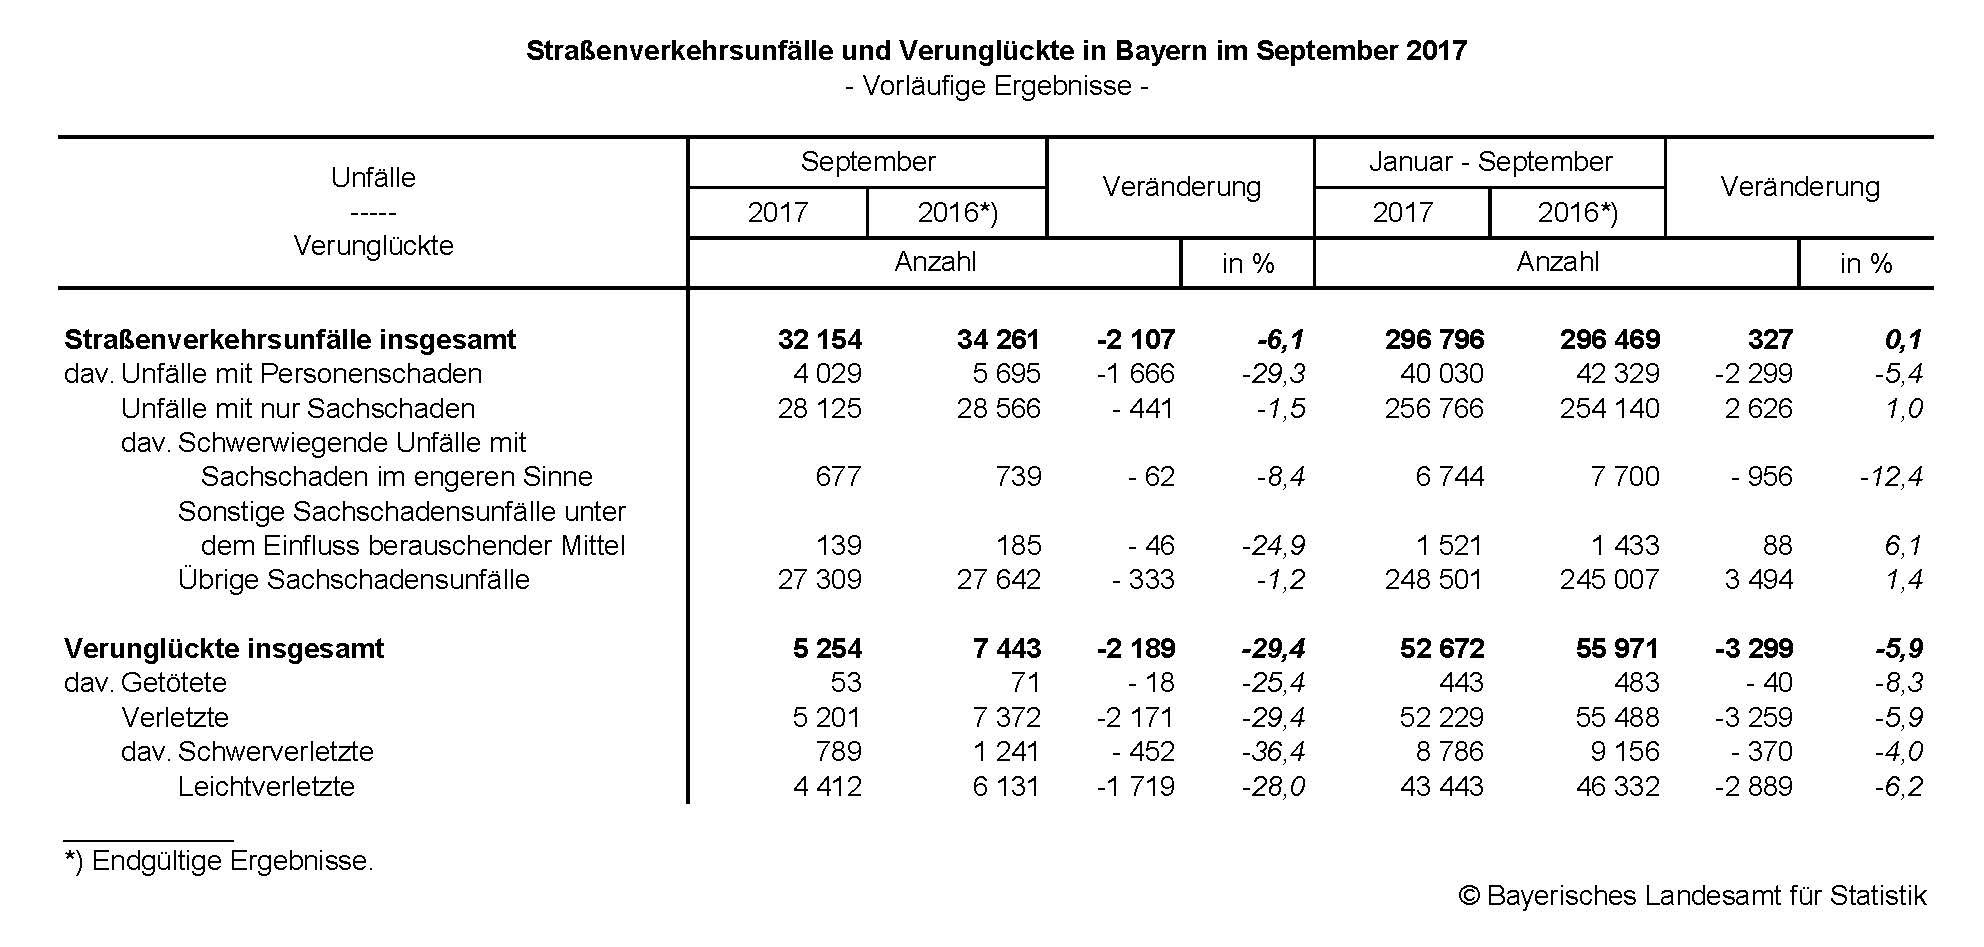 Straßenverkehrsunfälle und Verunglückte in Bayern im September 2017